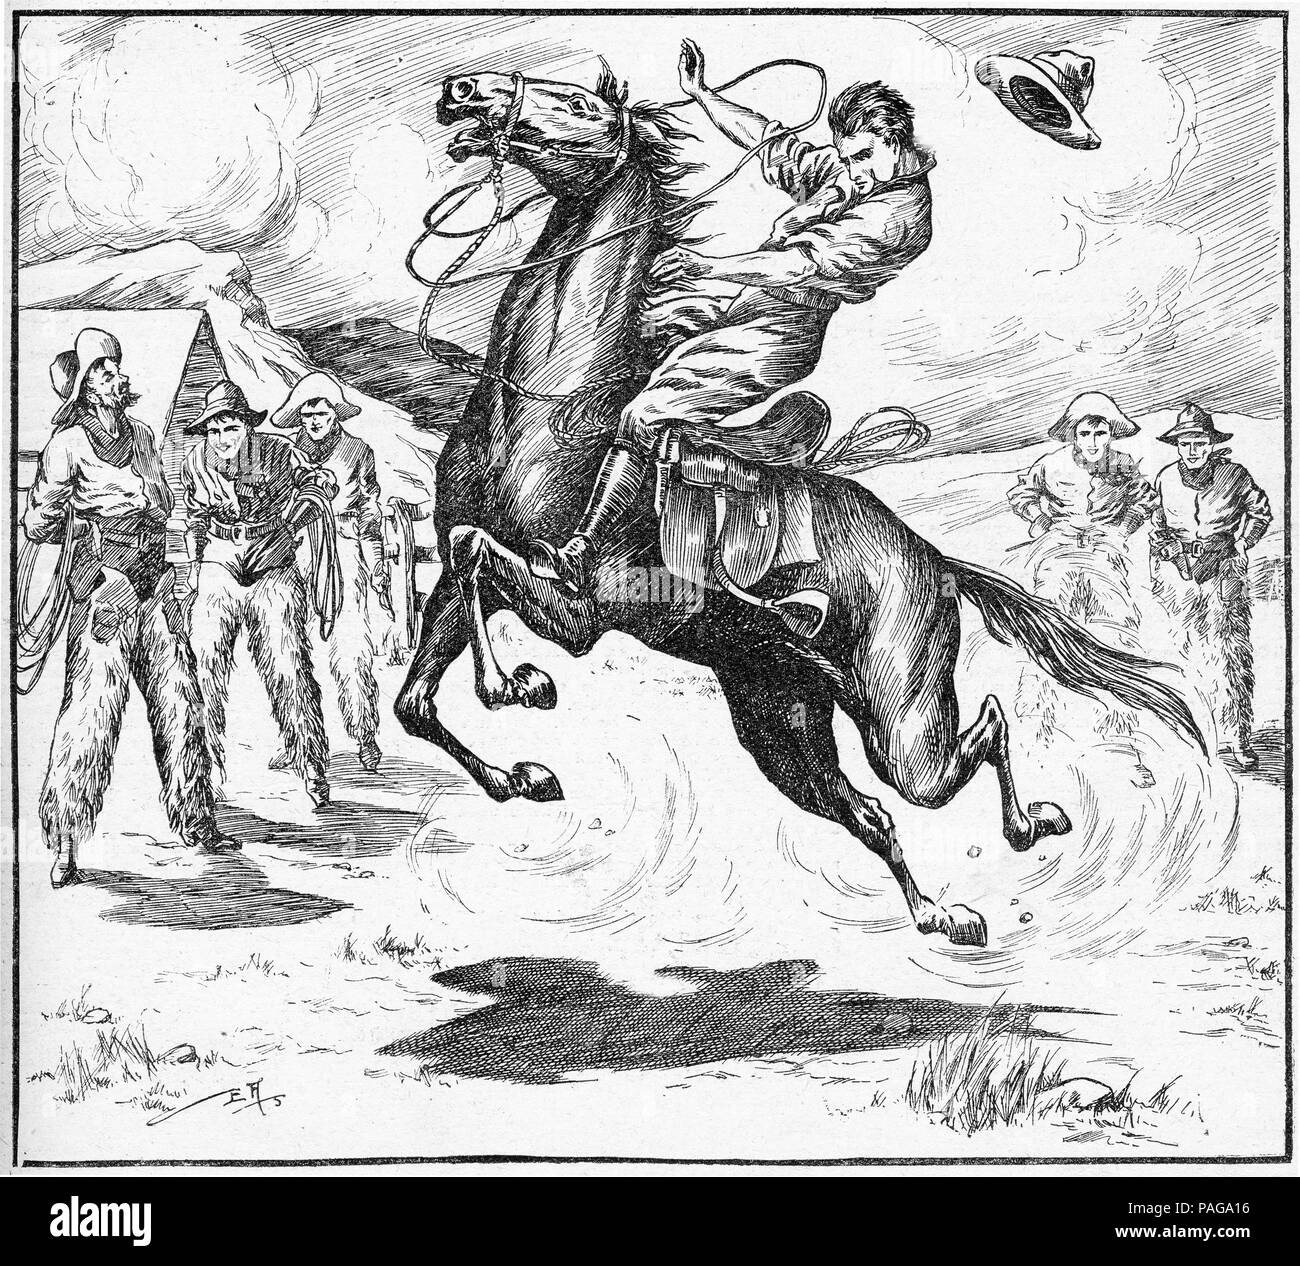 Gravur einer Cowboy in ein neues Pferd zu brechen. Von Chums, eine Illustrierte Wochenzeitung für Jungen, 1916. Stockfoto